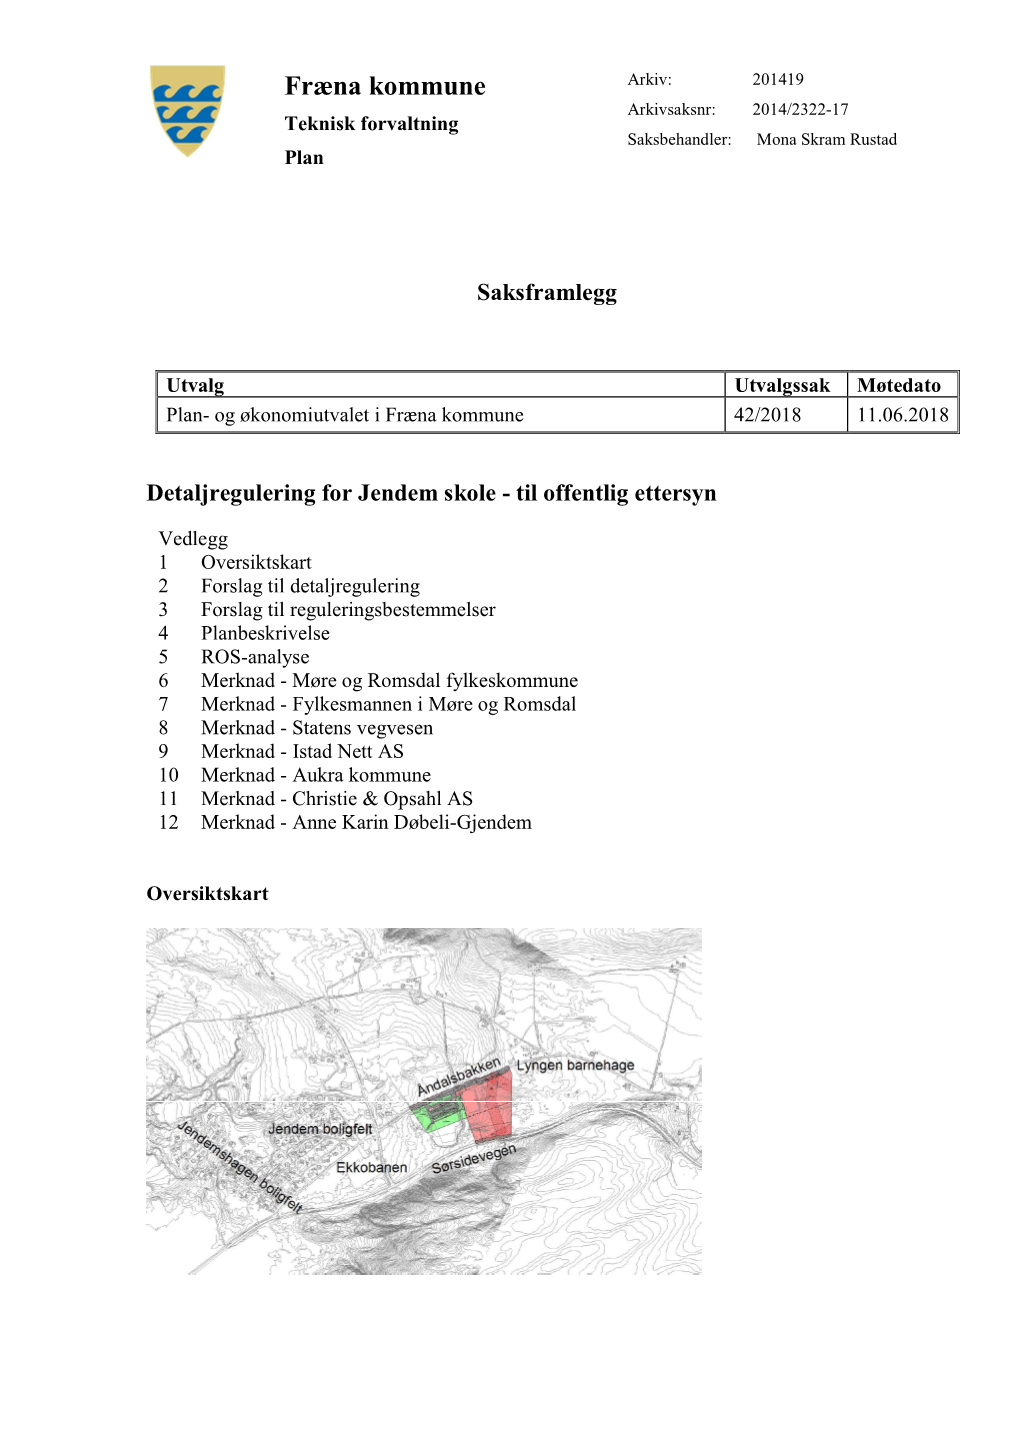 Fræna Kommune Arkiv: 201419 Arkivsaksnr: 2014/2322-17 Teknisk Forvaltning Saksbehandler: Mona Skram Rustad Plan